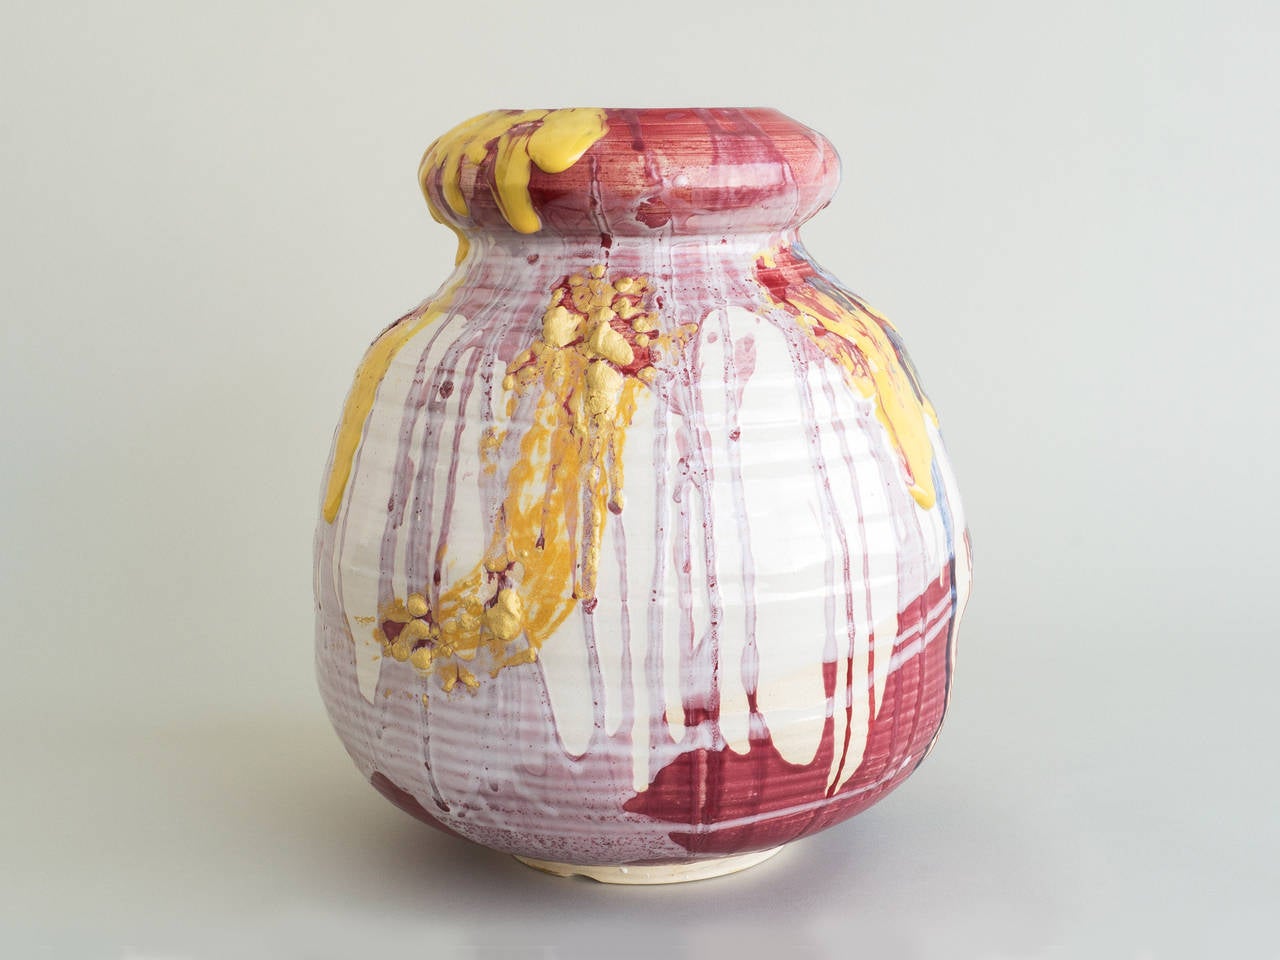 Stoneware vessel with multicolored glaze